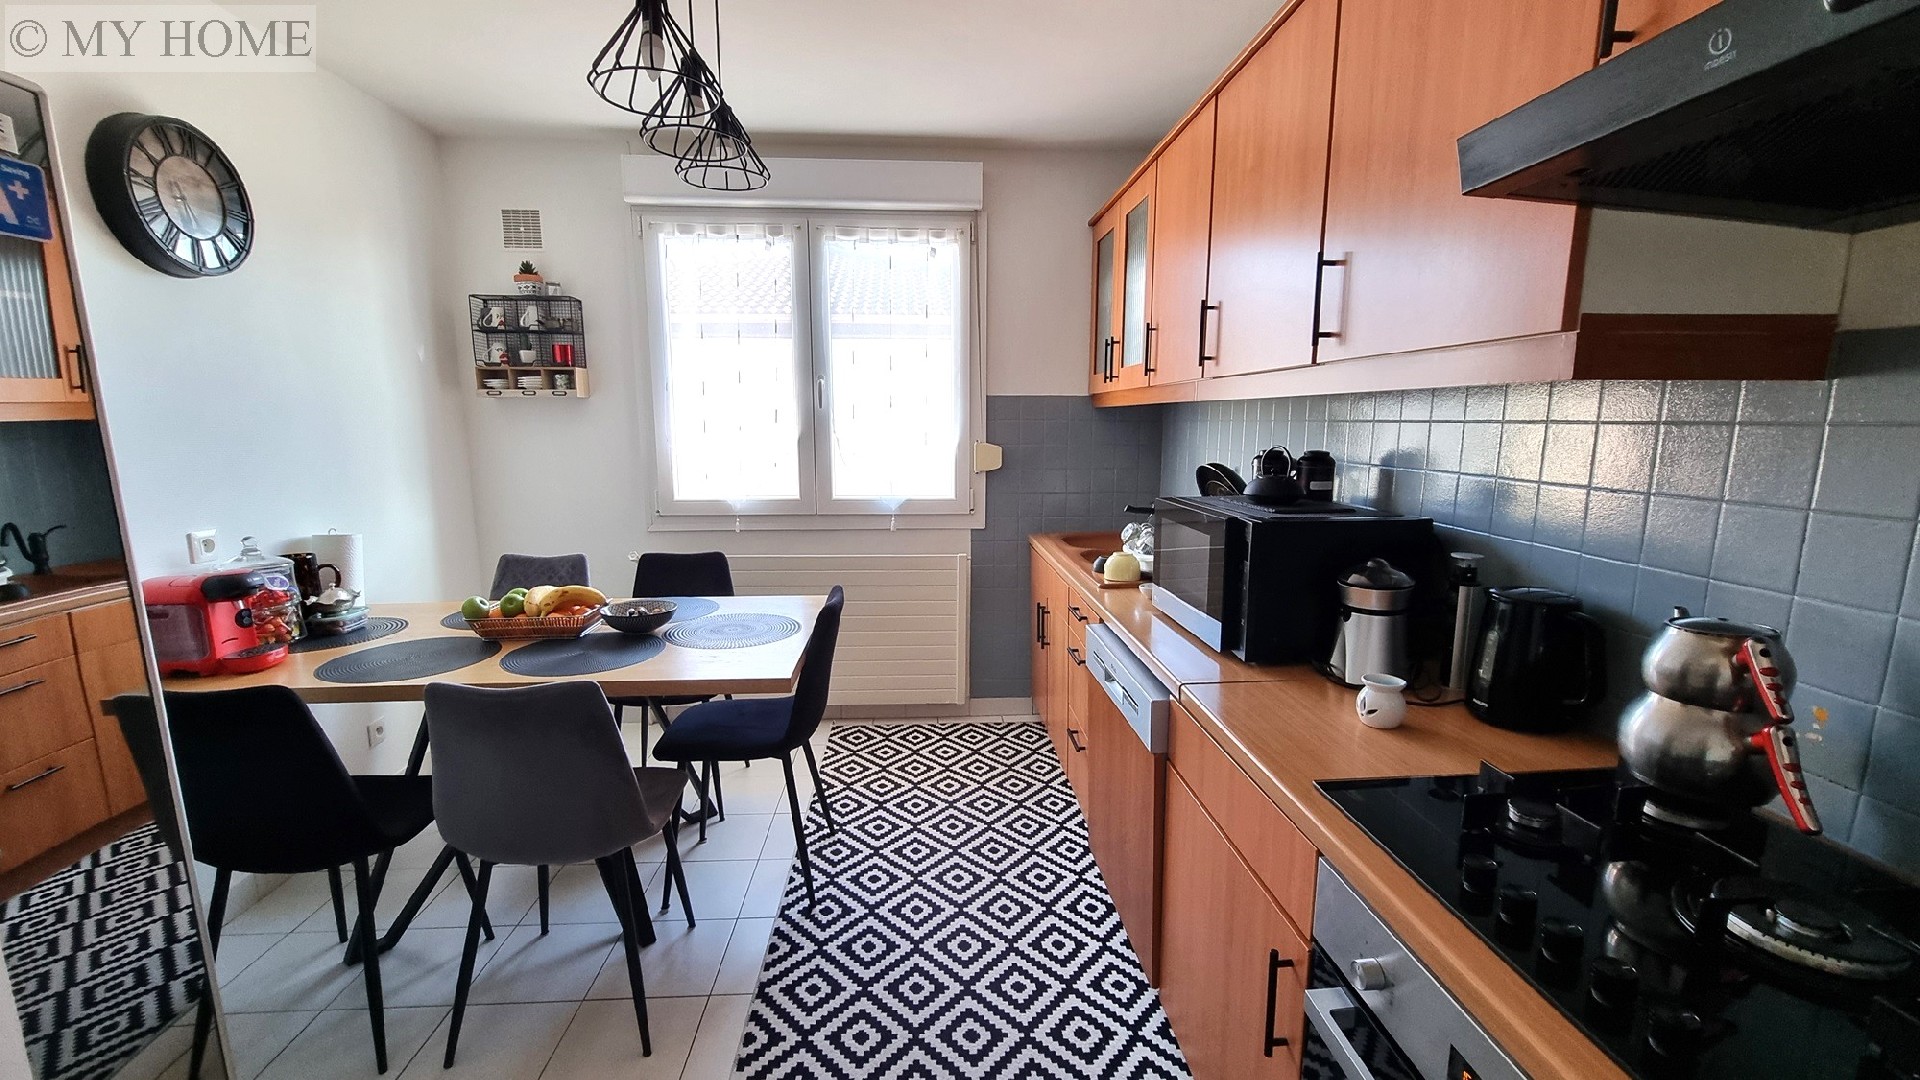 Vente appartement - TOUL 119,7 m², 6 pièces